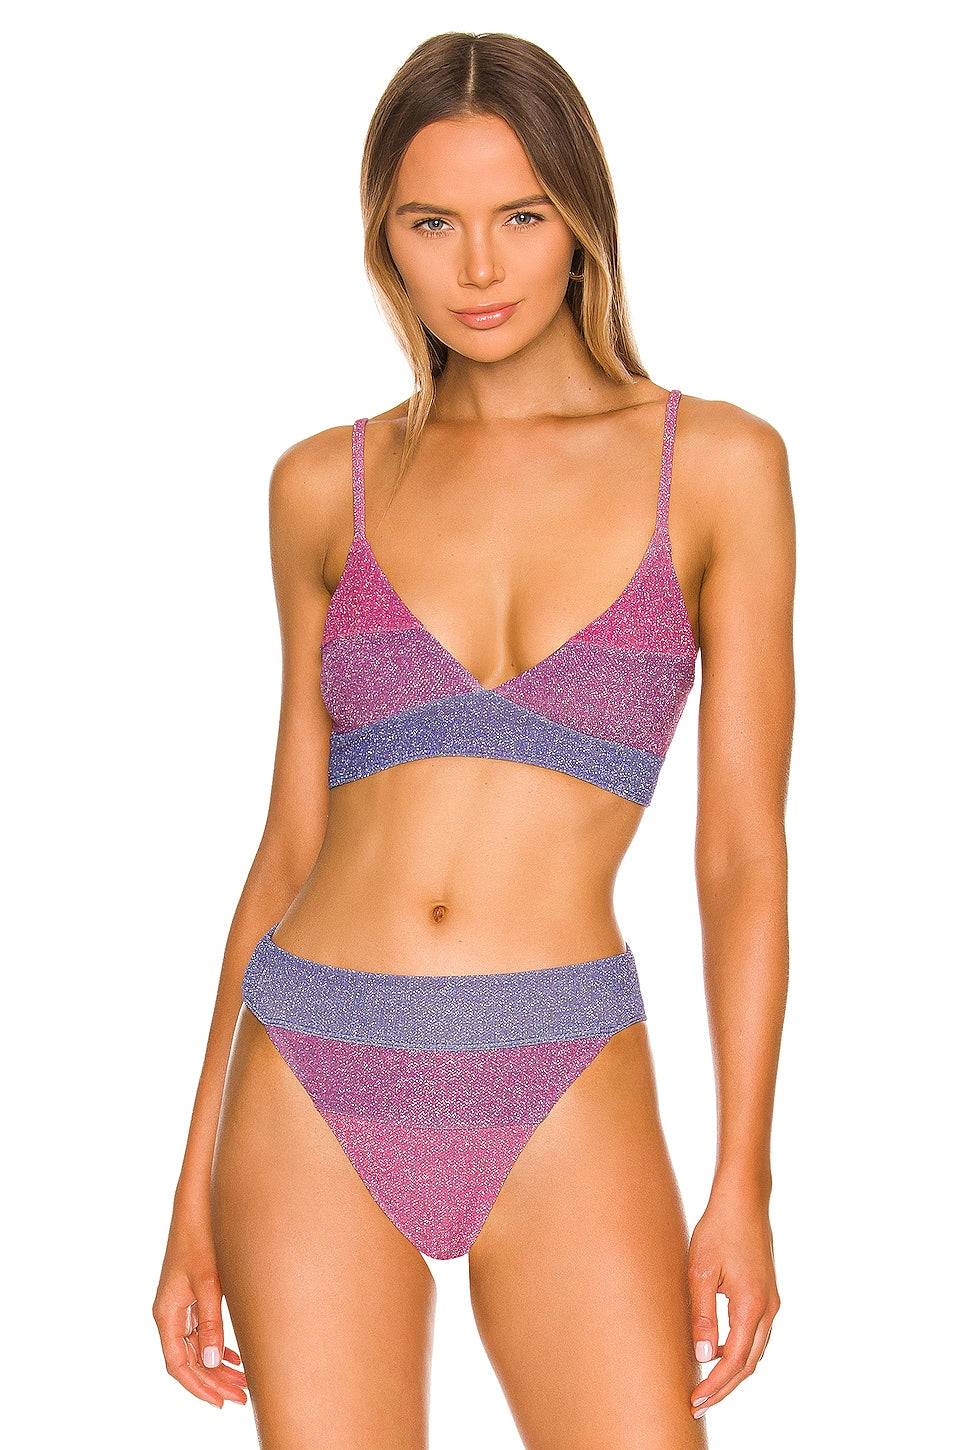 BEACH RIOT X REVOLVE Riza Bikini Top in Gemstone Colorblock Size Small